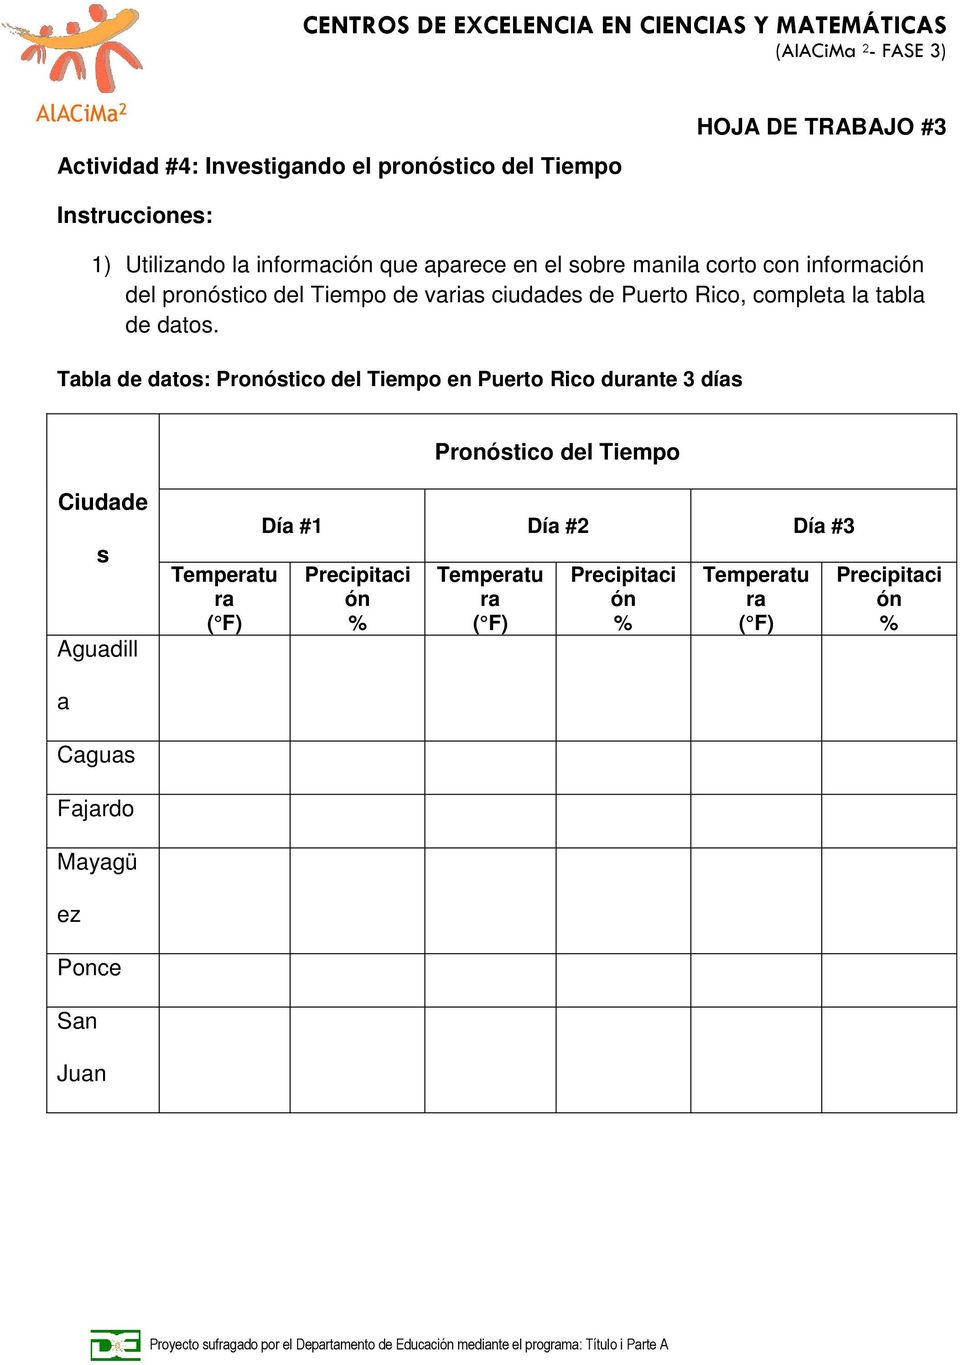 Tabla de datos: Pronóstico del Tiempo en Puerto Rico durante 3 días Pronóstico del Tiempo Ciudade s Aguadill Temperatu ra ( F) Día #1